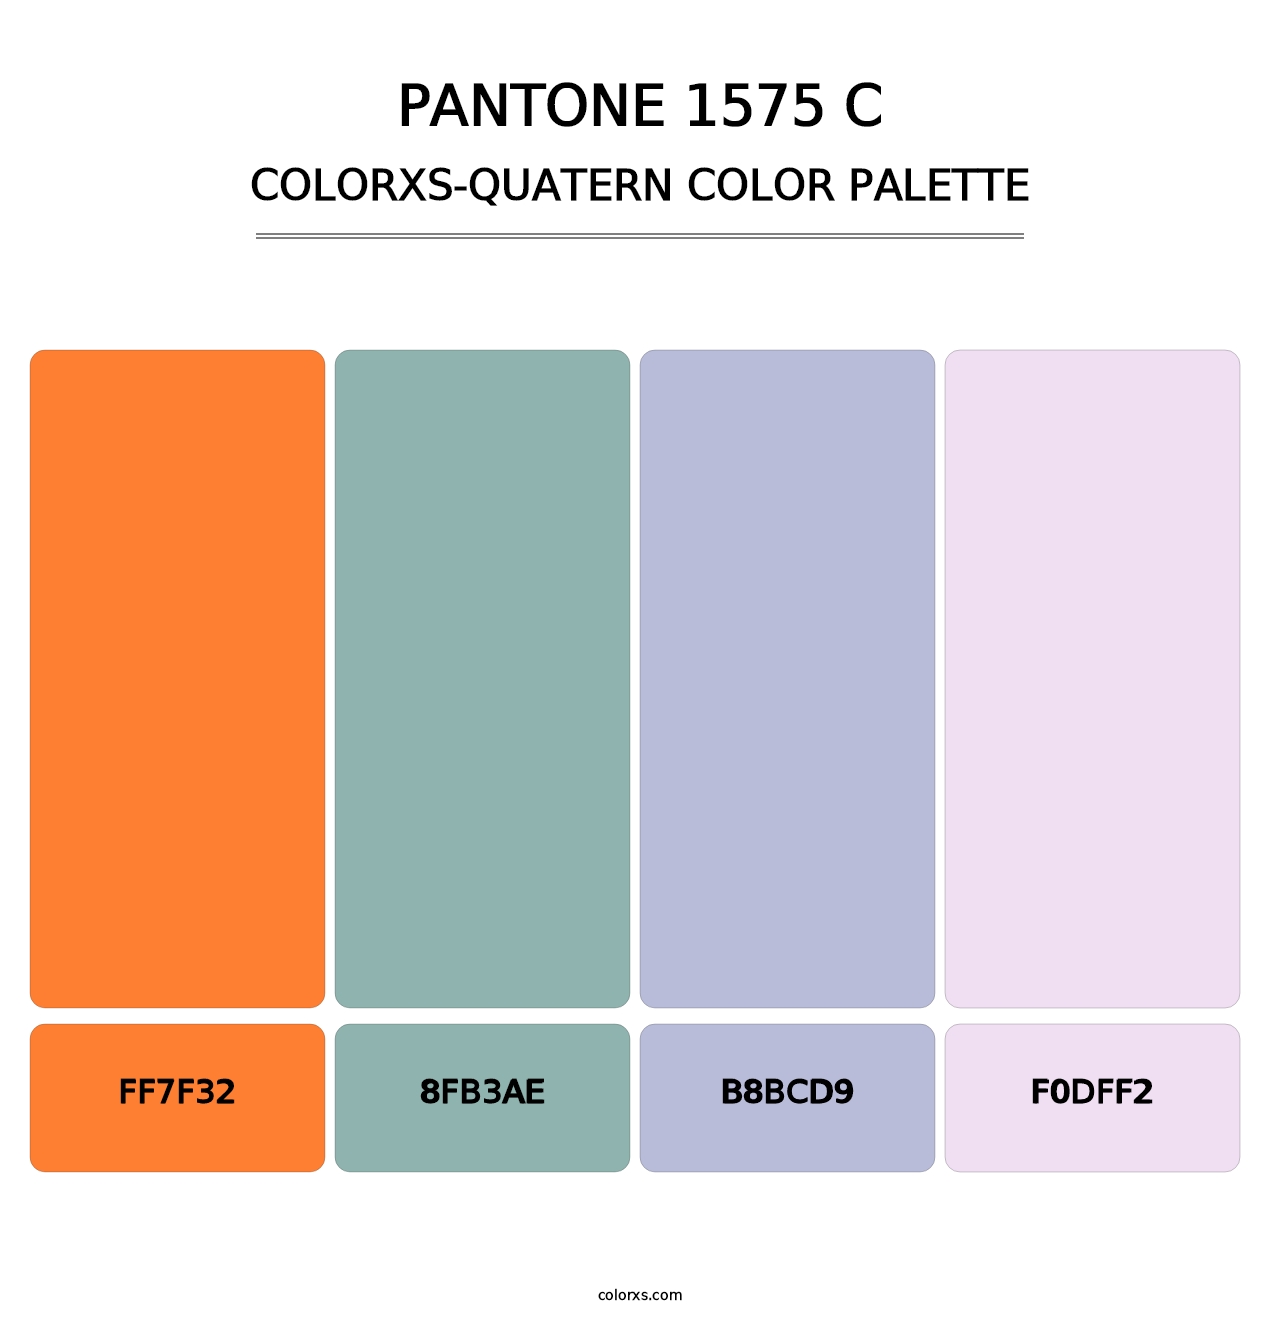 PANTONE 1575 C - Colorxs Quatern Palette